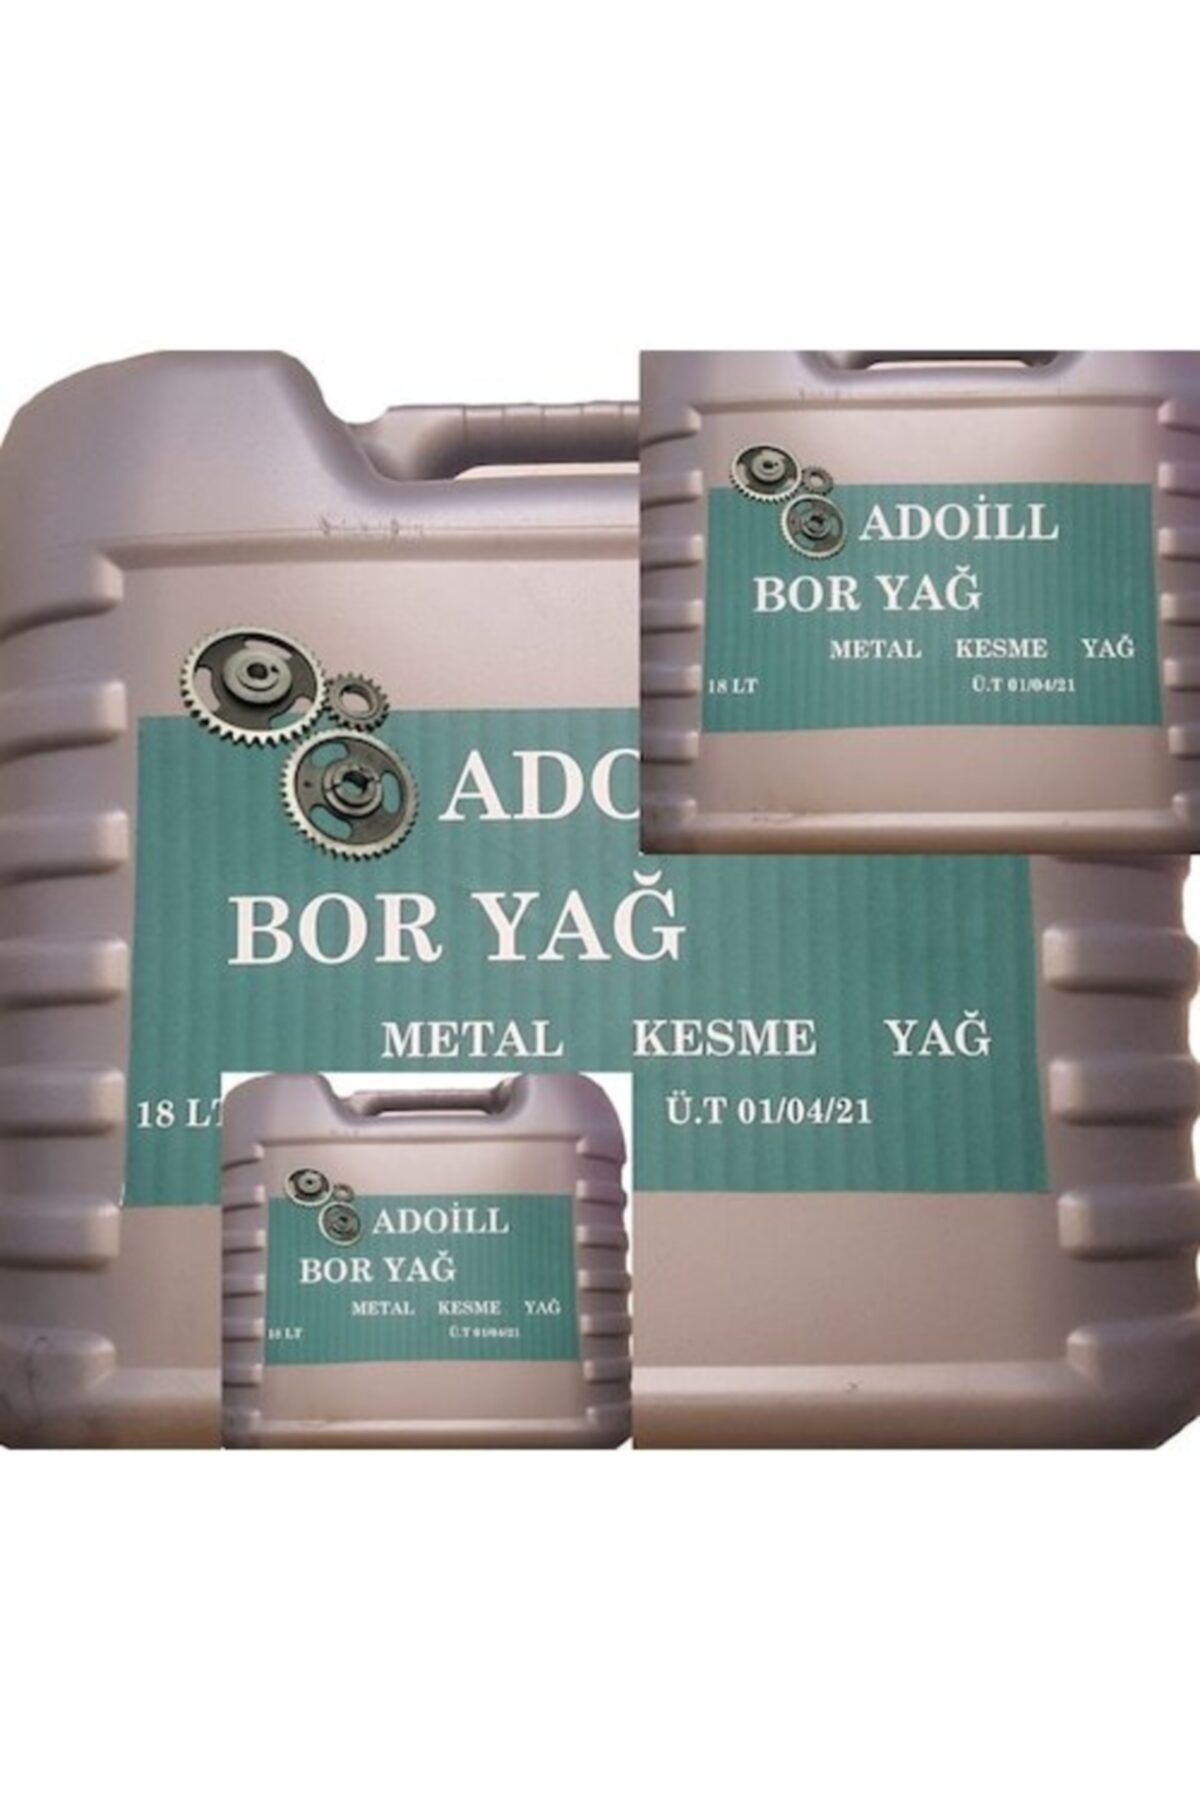 Adoil L Bor Yağ 3 Ad 18 Lt Paket Eko Paket Metal Kesme Yağ